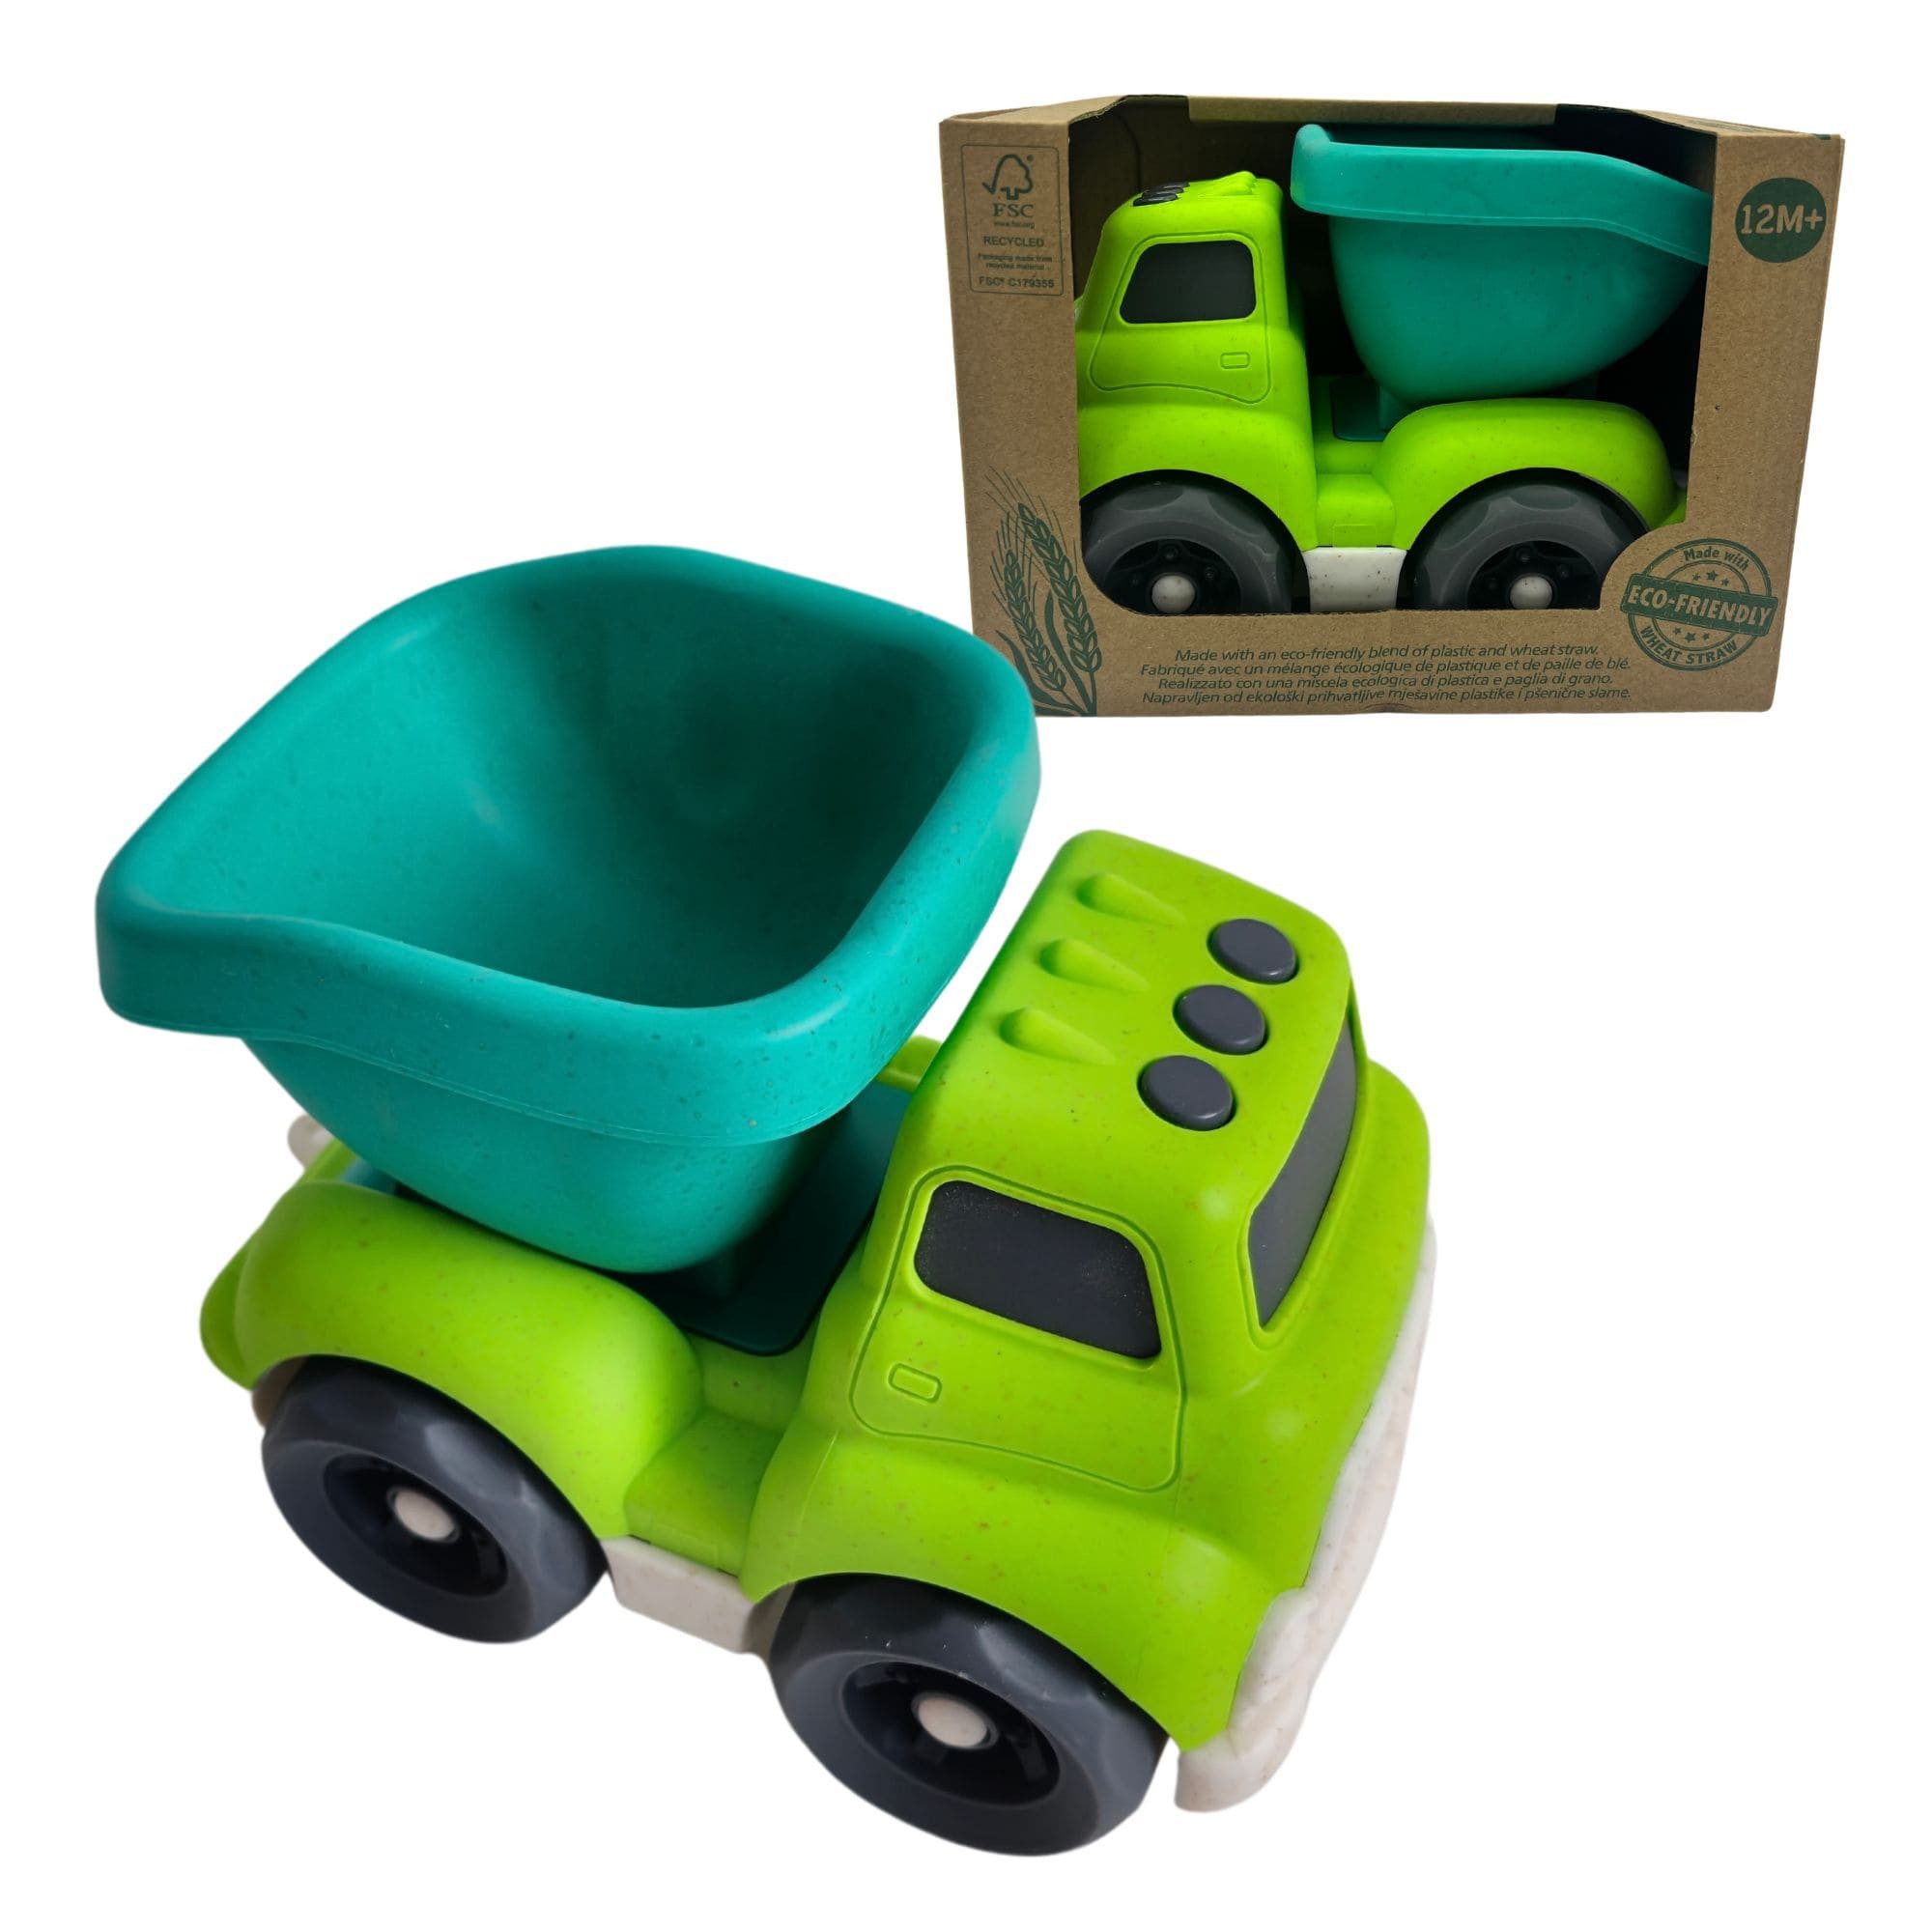 alldoro Spielzeug-LKW 60404, Lastwagen, ecofriendly aus Kunststoff-Weizenstroh-Mix, 18 x 11 x 13 cm